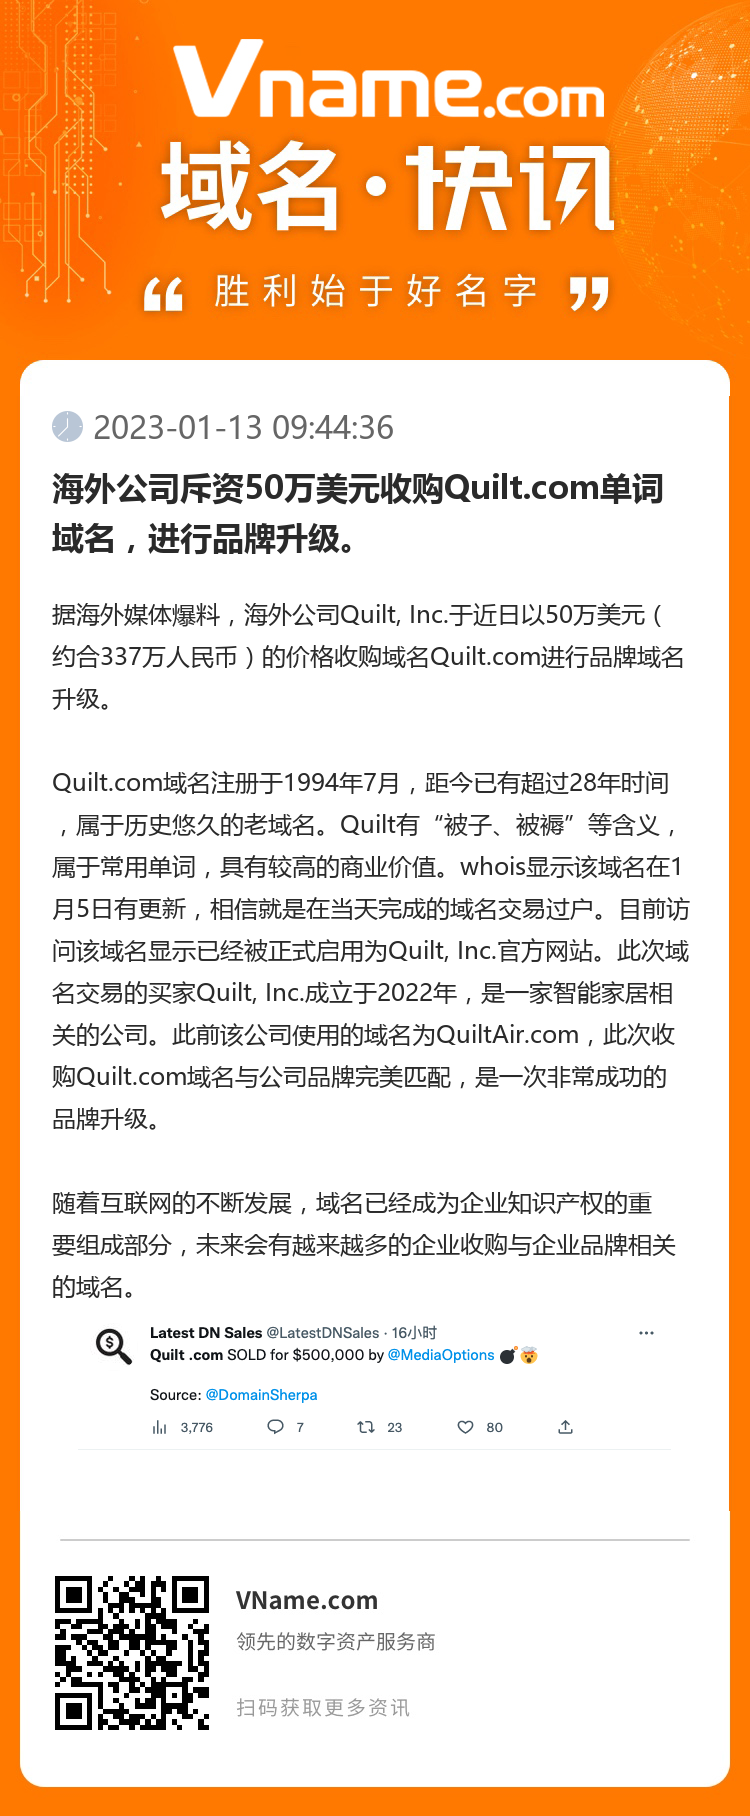 海外公司斥资50万美元收购Quilt.com单词域名，进行品牌升级。